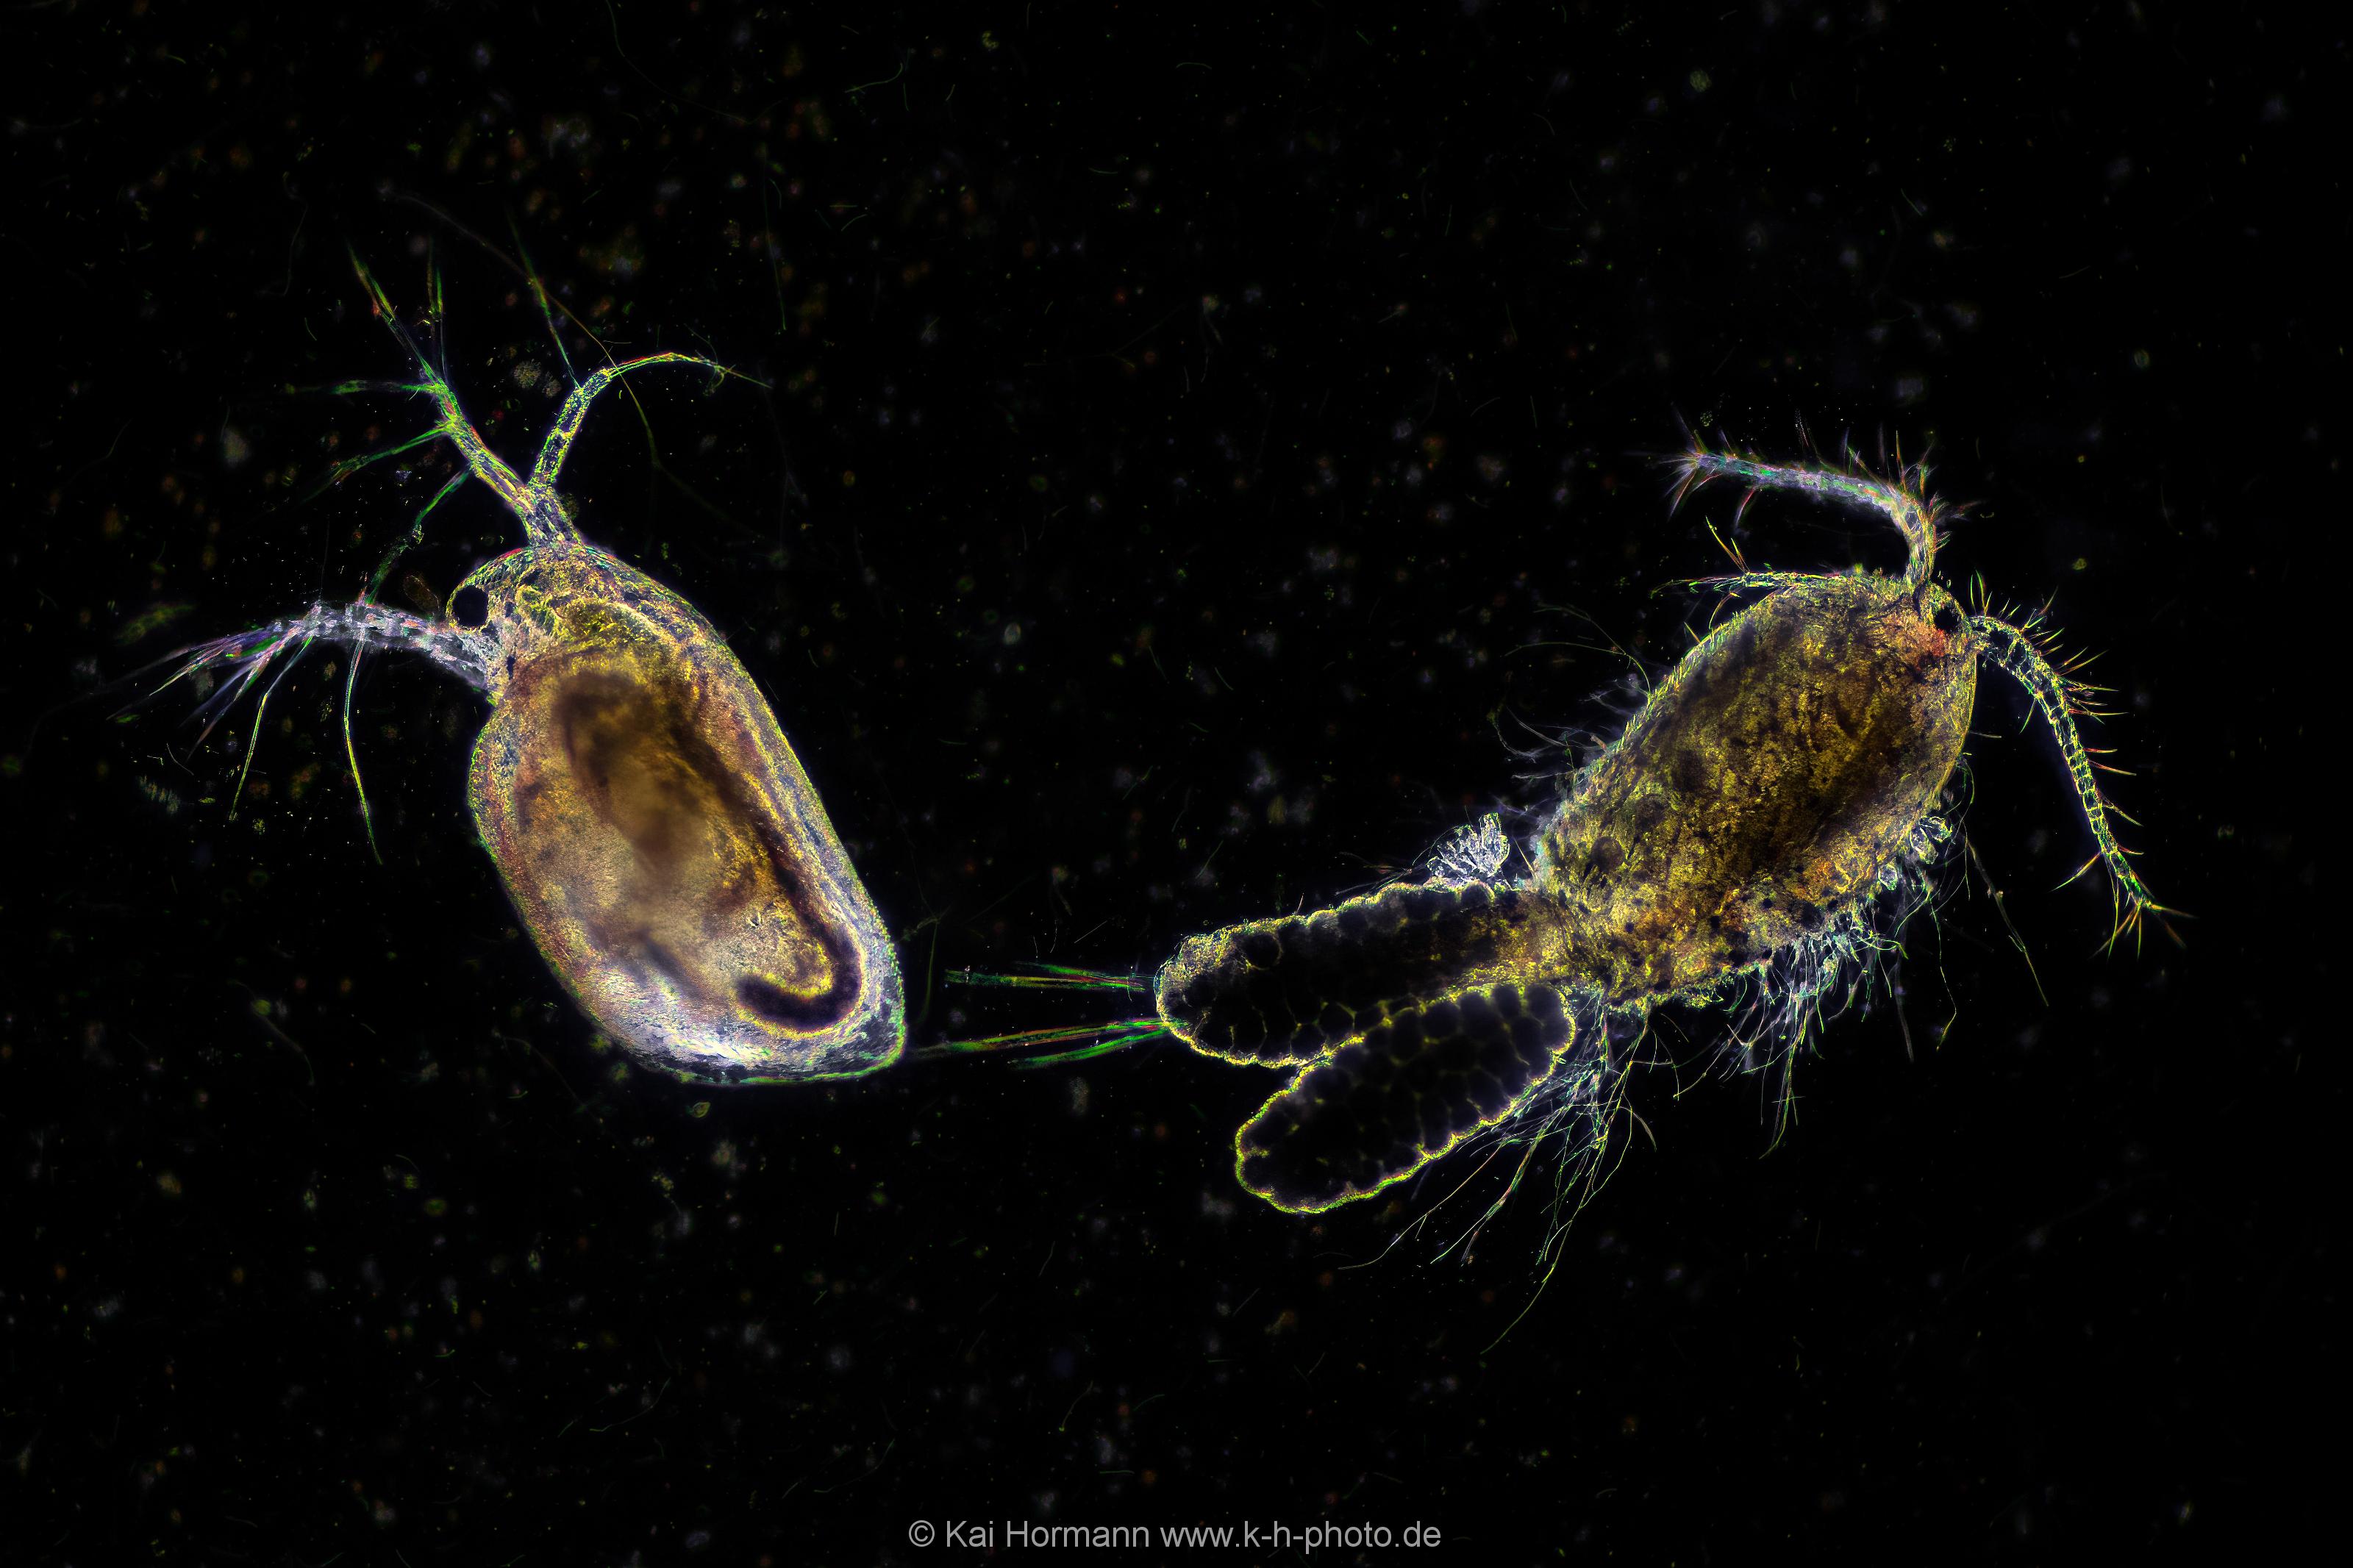 Wasserfloh und Ruderfußkrebs. (Dunkelfeld-Aufnahme) Mikrofotografie: Mikroskopische Aufnahmen von Einzellern, Algen und Kleinstlebewesen.